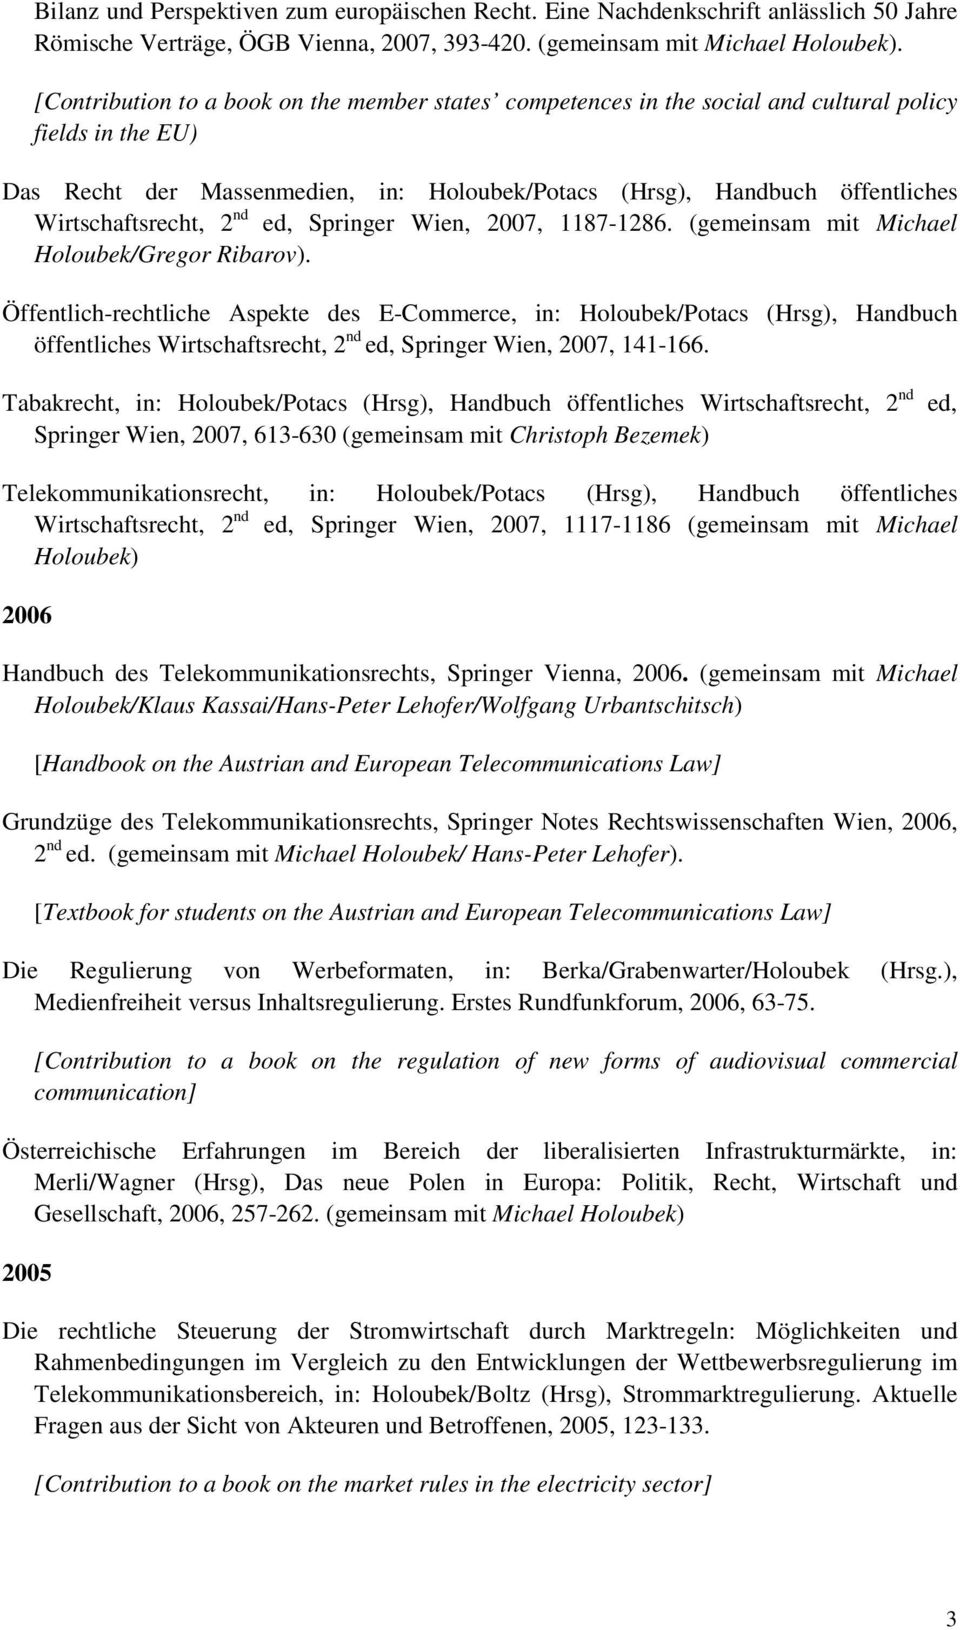 Wirtschaftsrecht, 2 nd ed, Springer Wien, 2007, 1187-1286. (gemeinsam mit Michael Holoubek/Gregor Ribarov).